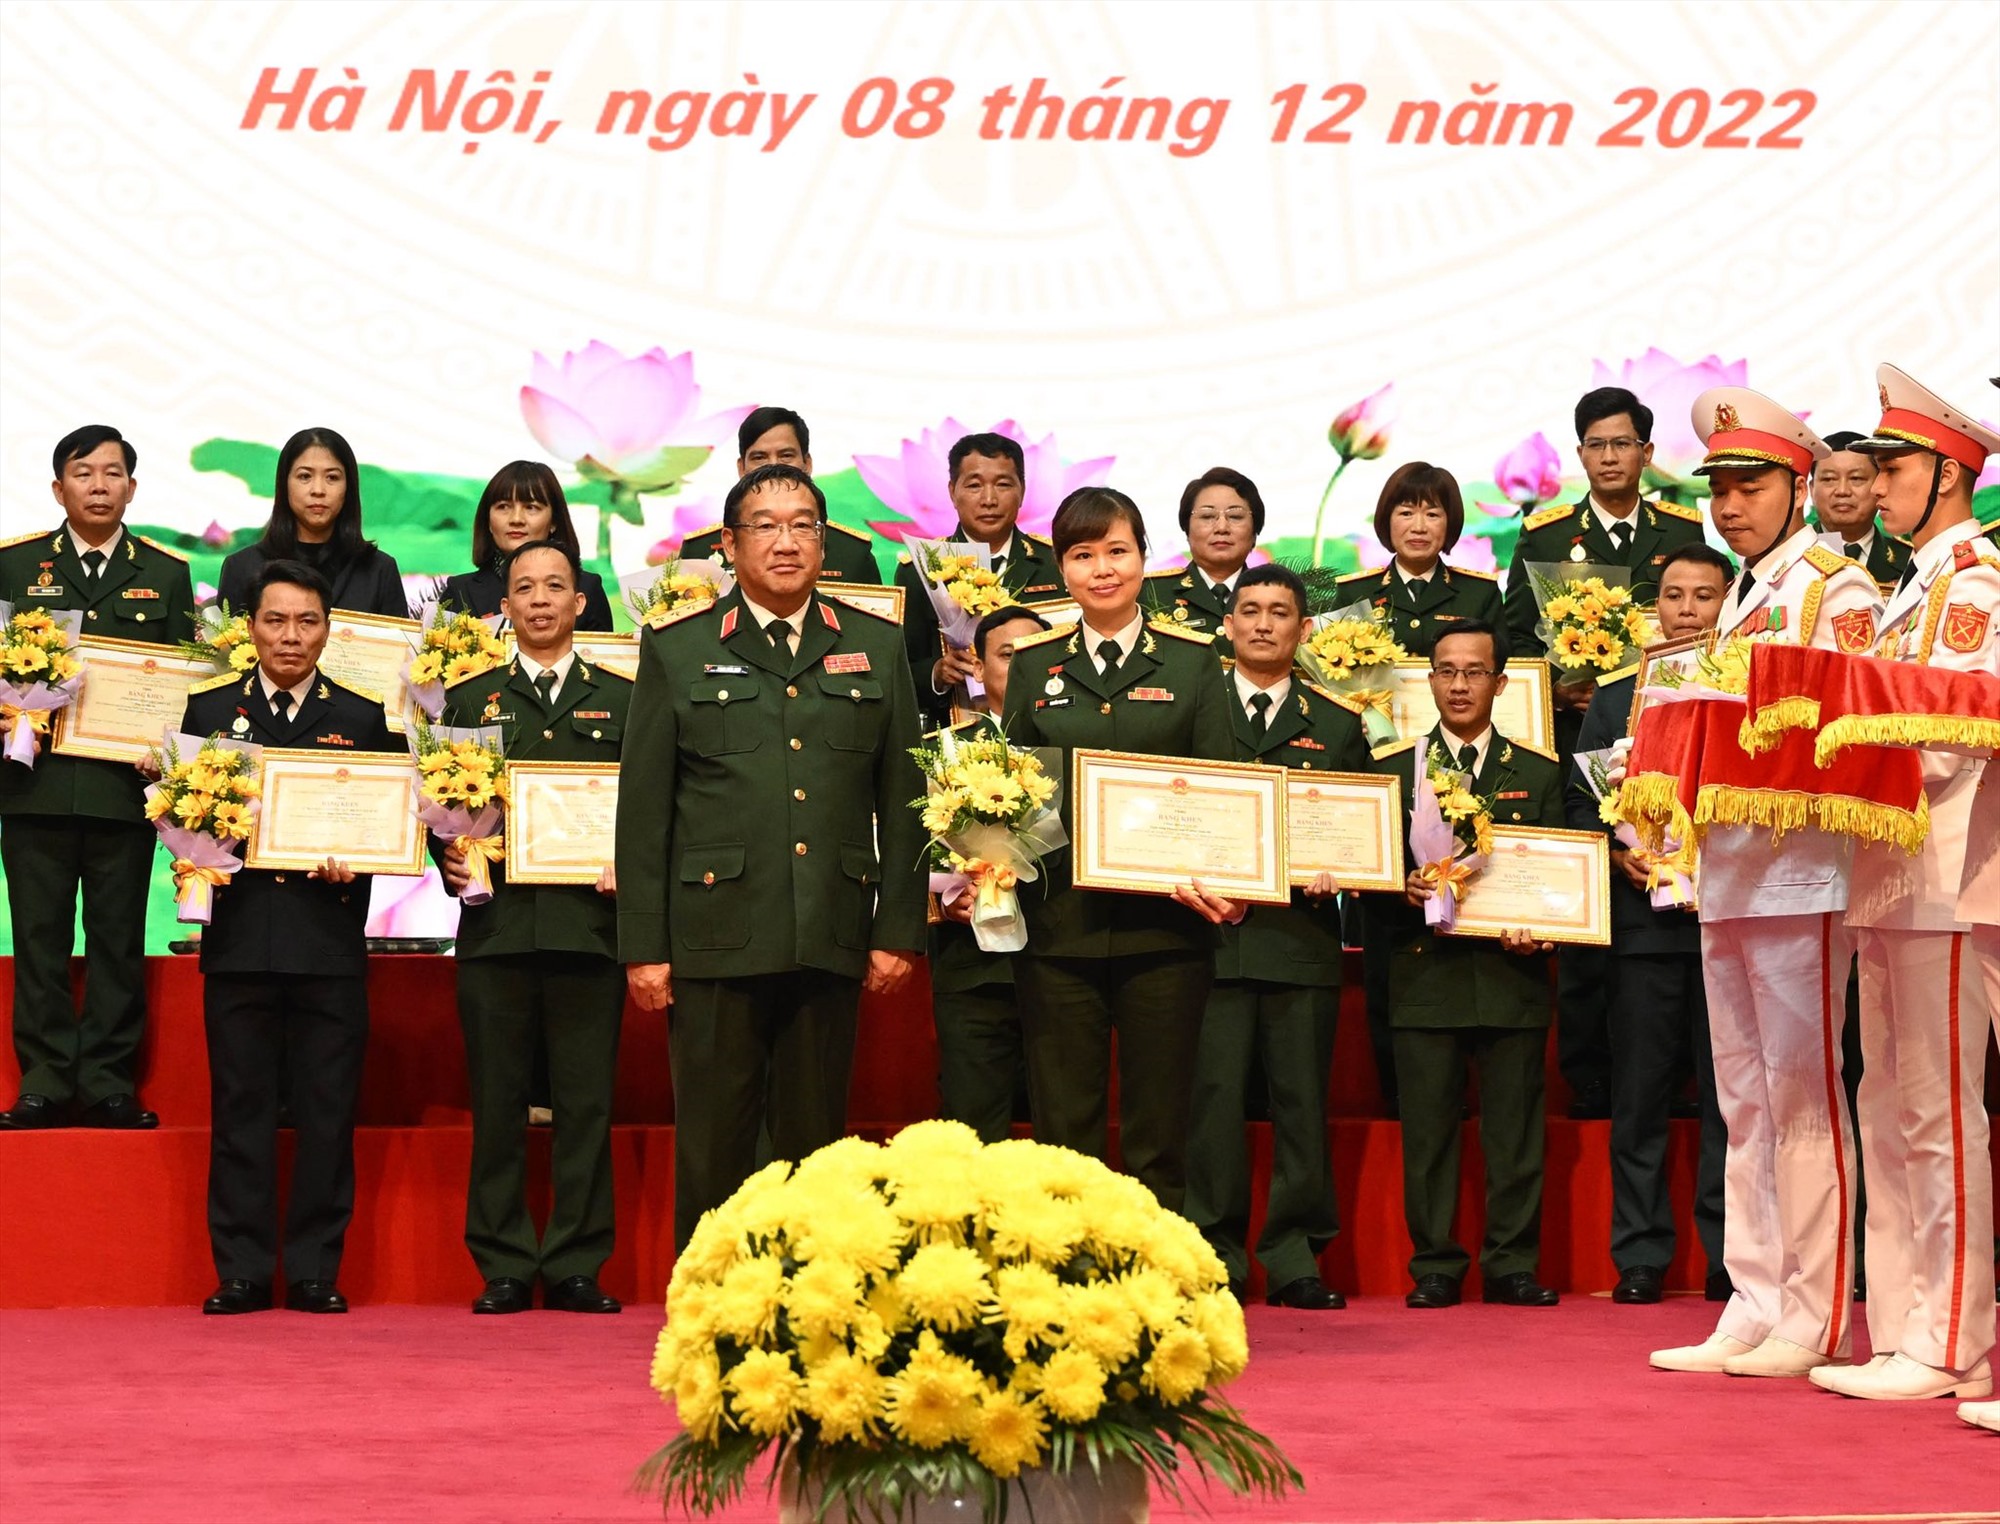 Công đoàn cơ sở MB được nhận Bằng khen cho Phong trào thi đua “Lao động giỏi, lao động sáng tạo” trong Công đoàn Quân đội giai đoạn 2017-2022